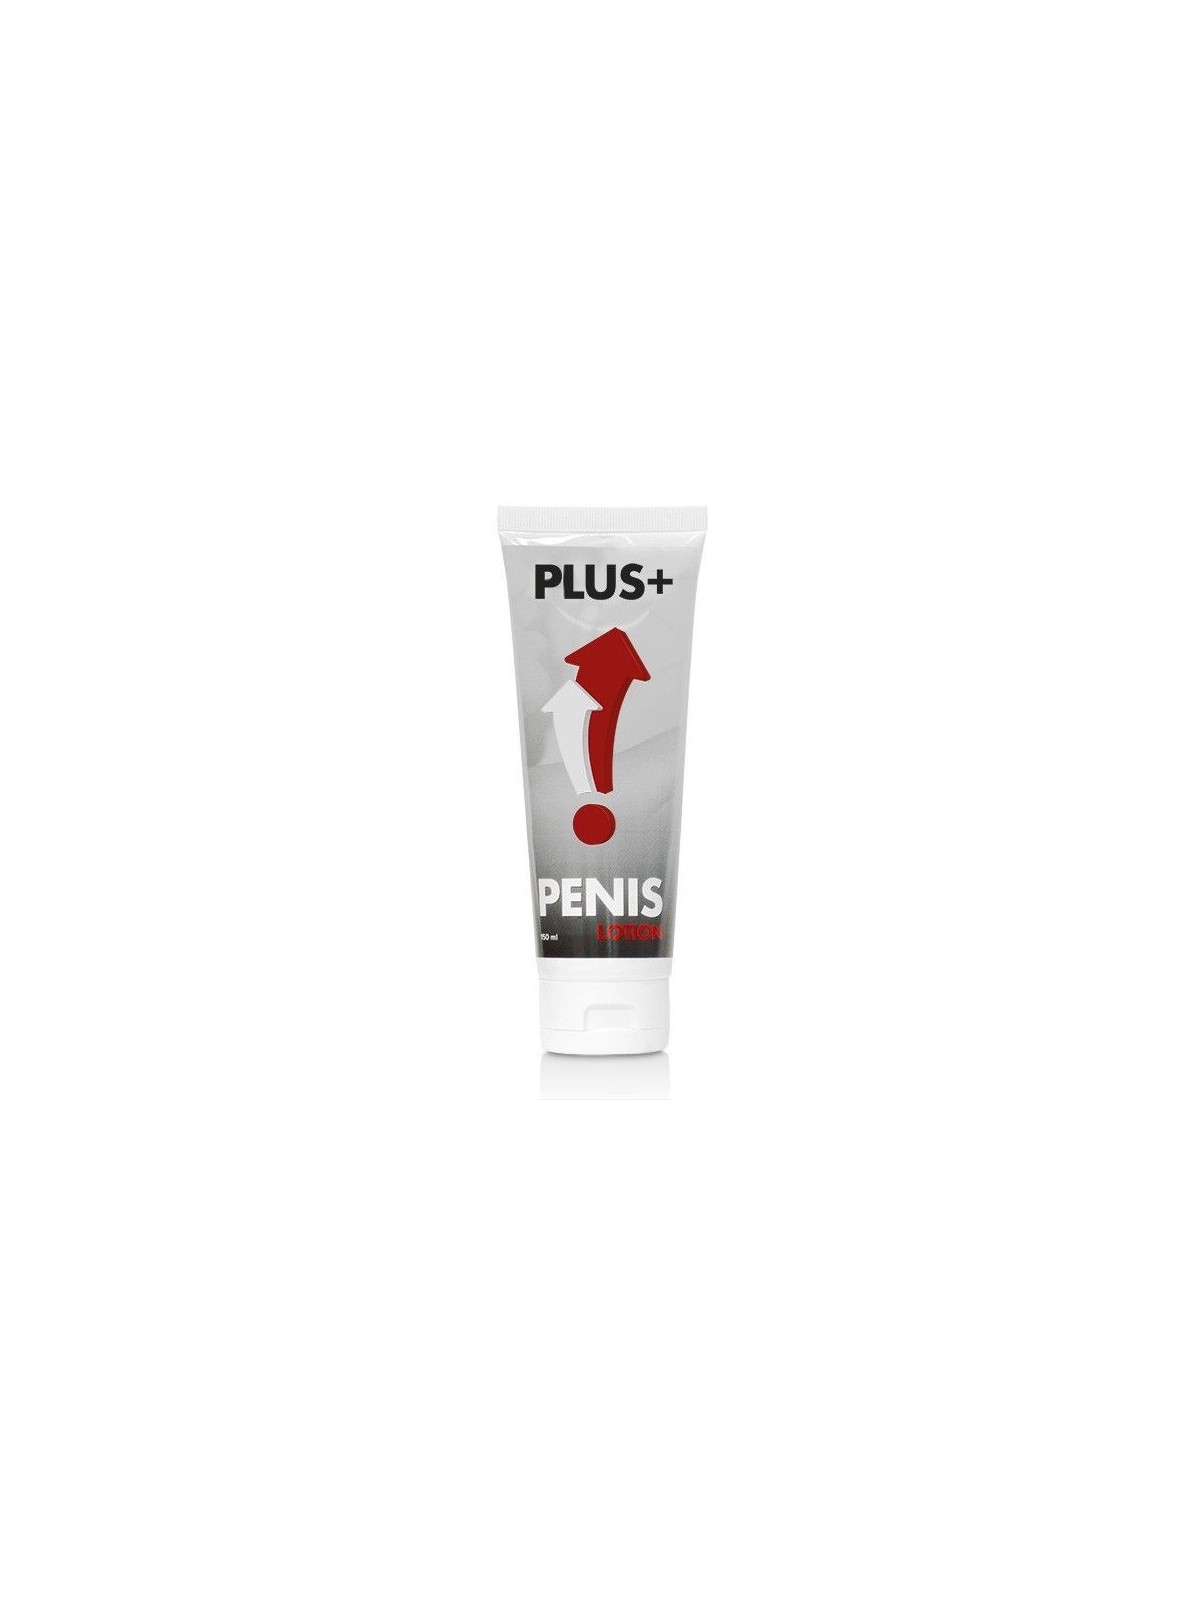 Penis Plus Lotion Aumenta Erección 150 ml - Comprar Potenciador erección Cobeco - Potenciadores de erección (1)